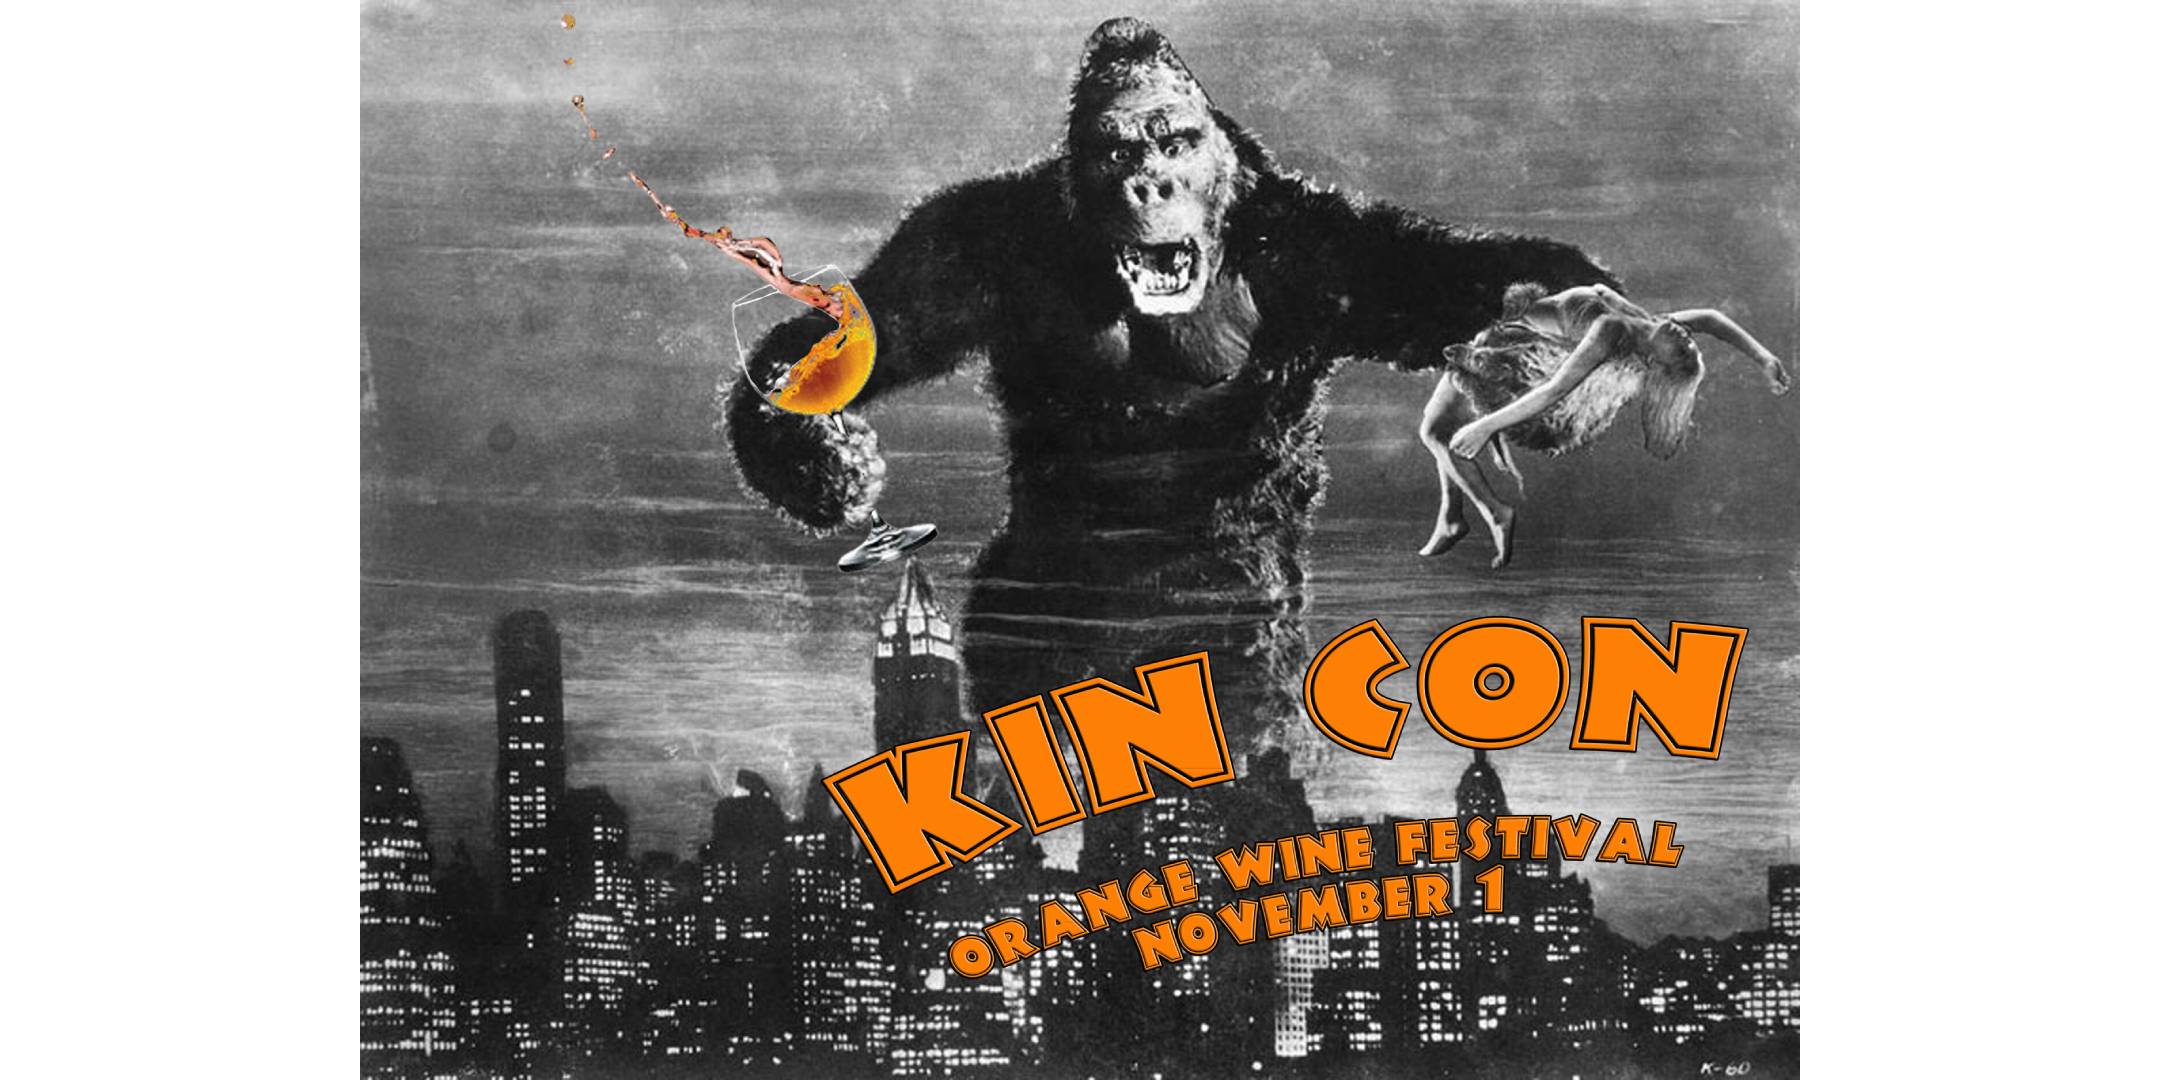 KINCON: ORANGE WINE FESTIVAL